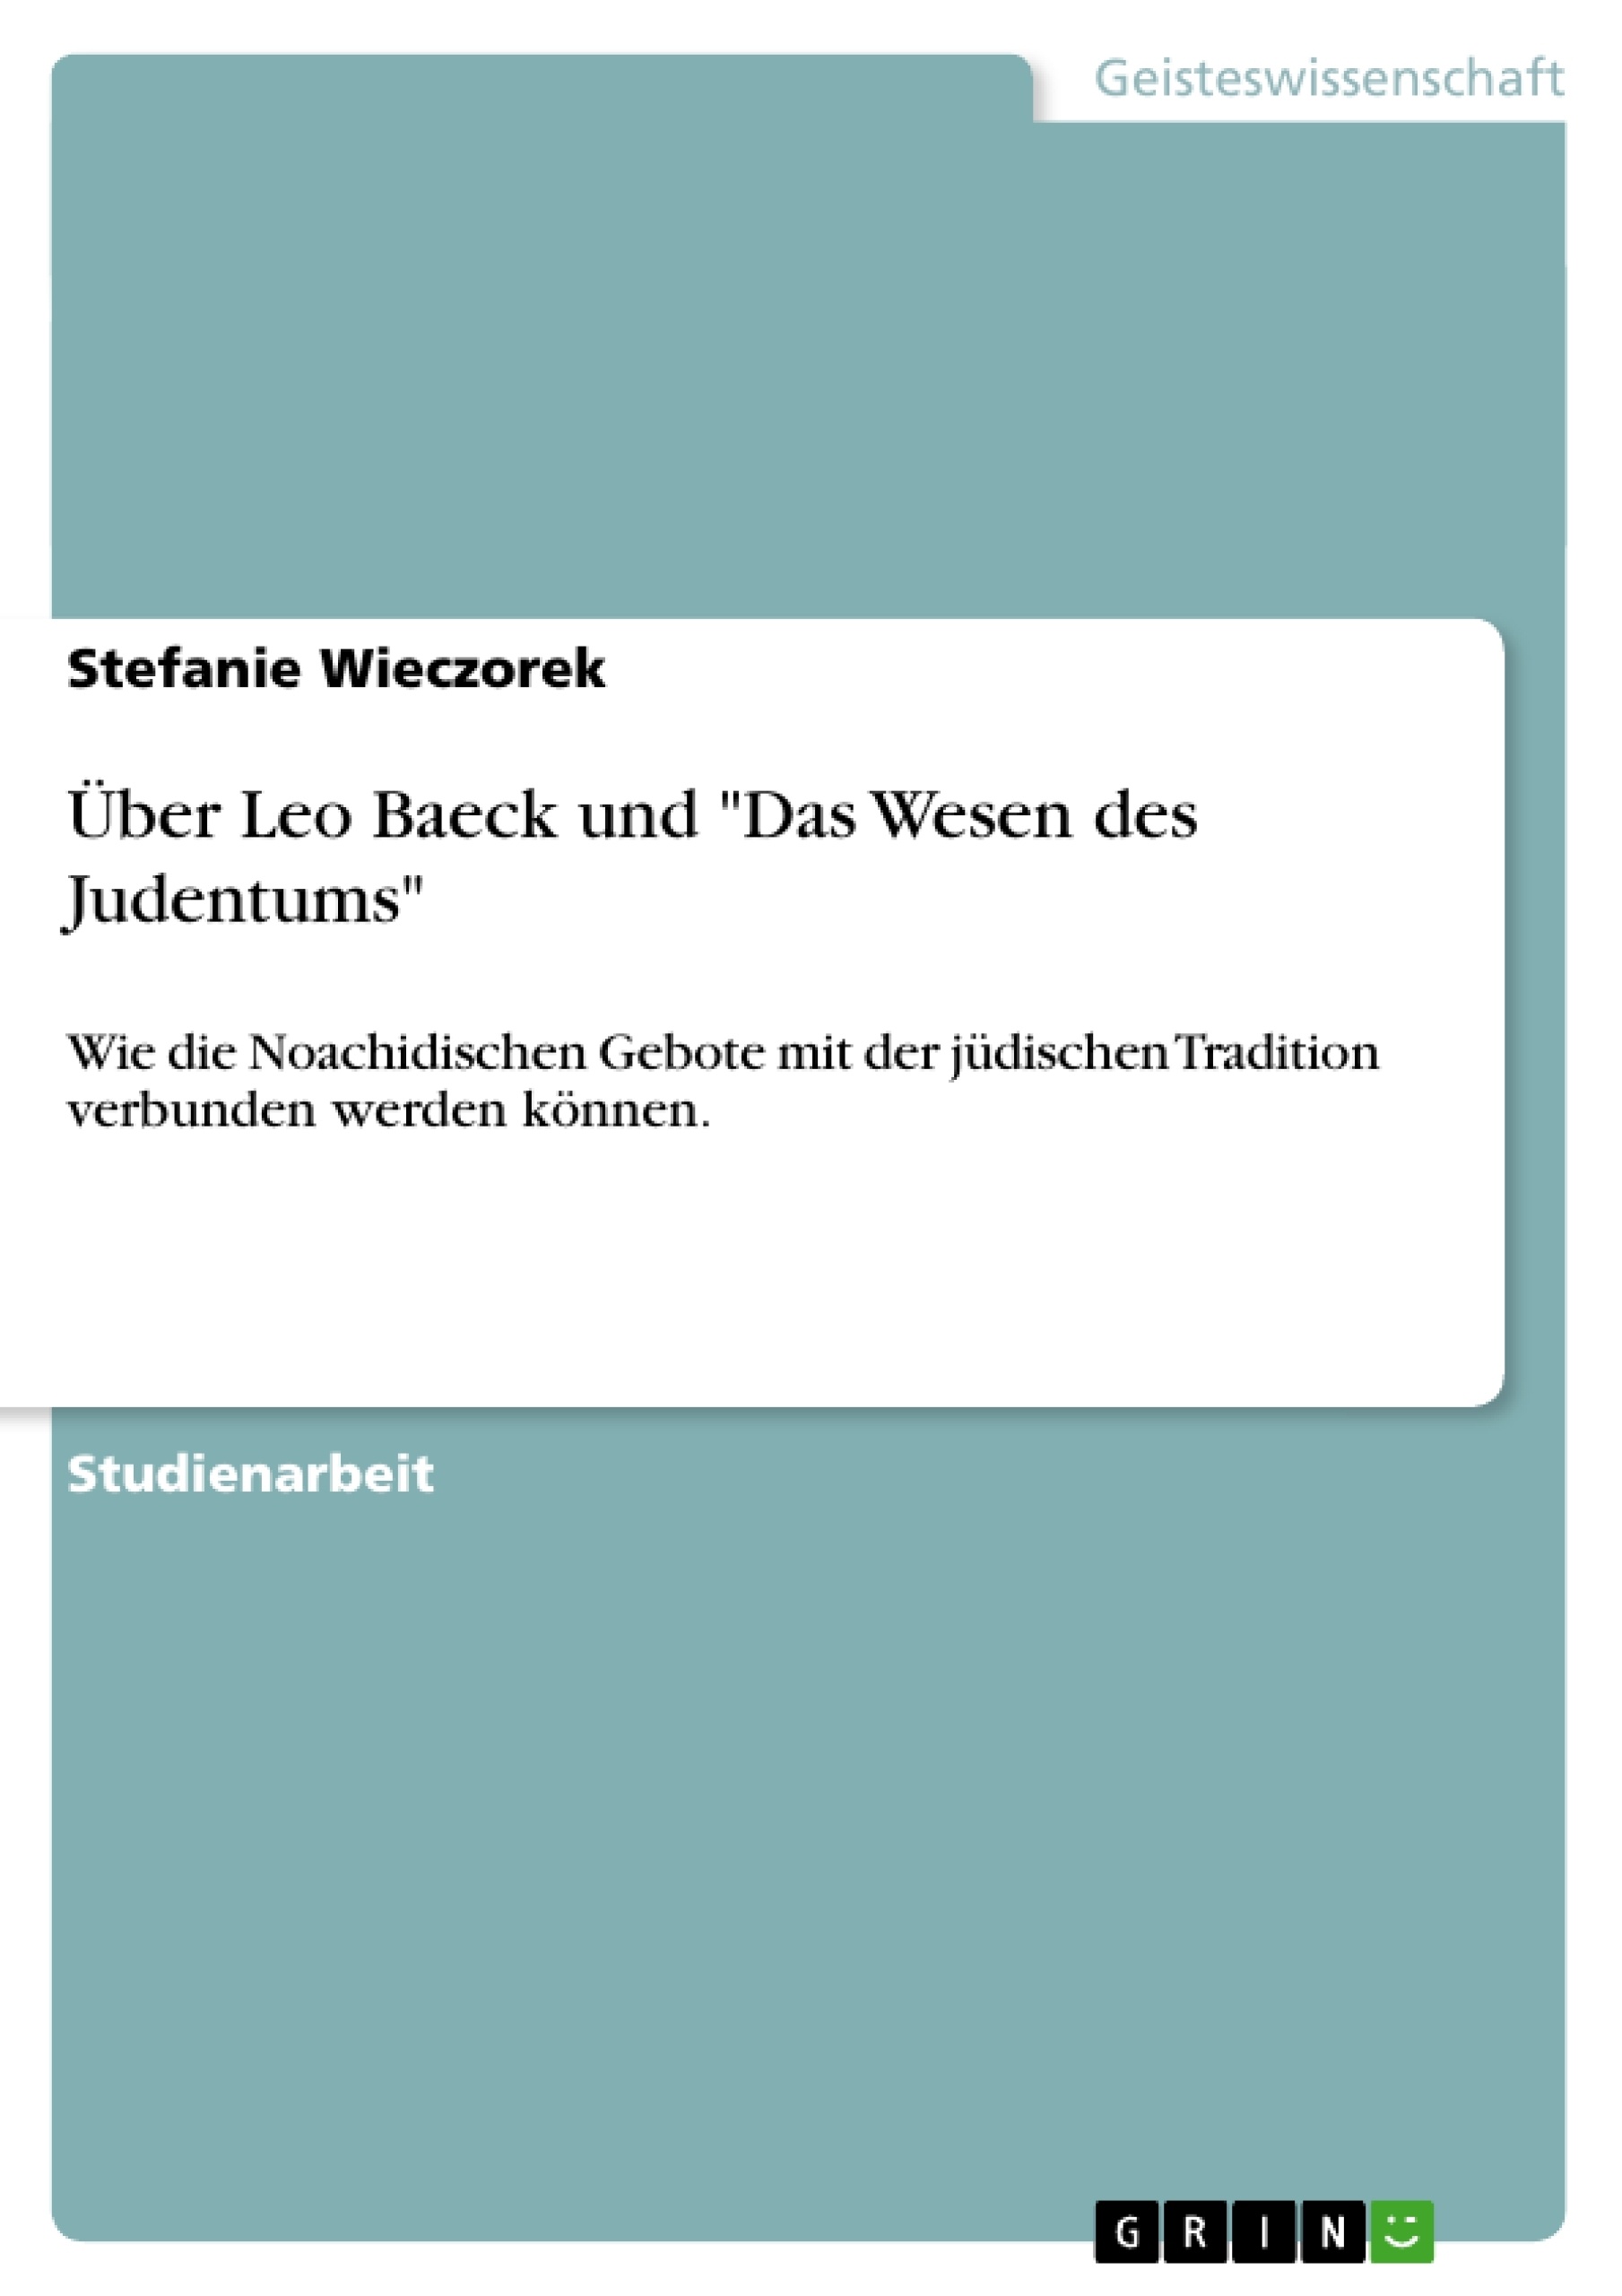 Title: Über Leo Baeck und "Das Wesen des Judentums"